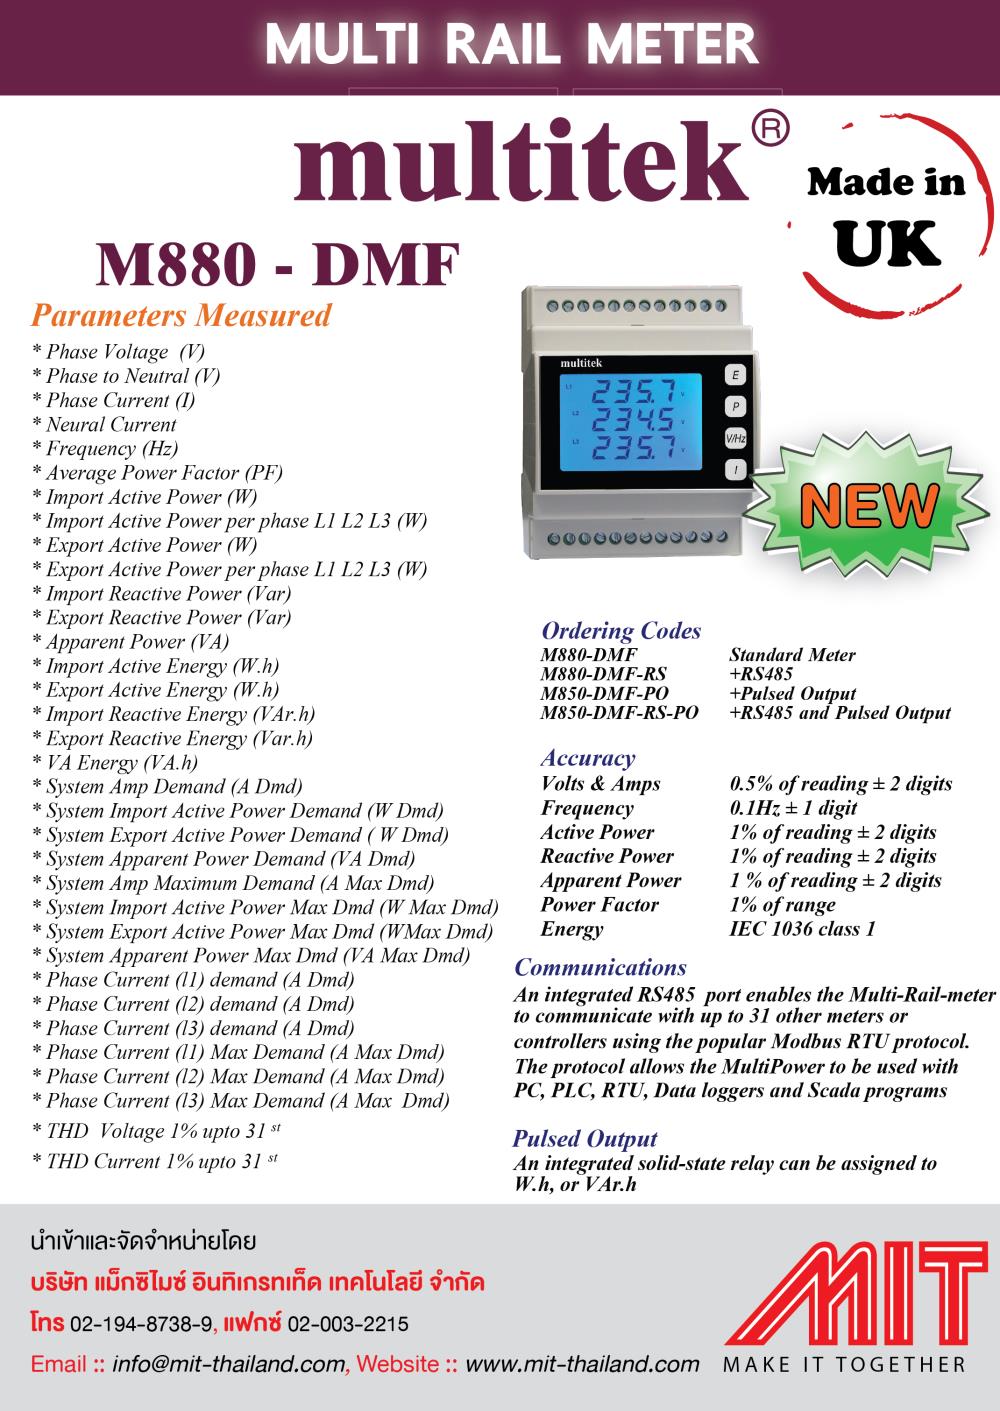 Multi Rail Meter, Digital Multifunction Power Meter,POWER METER,Multitek,Instruments and Controls/Meters